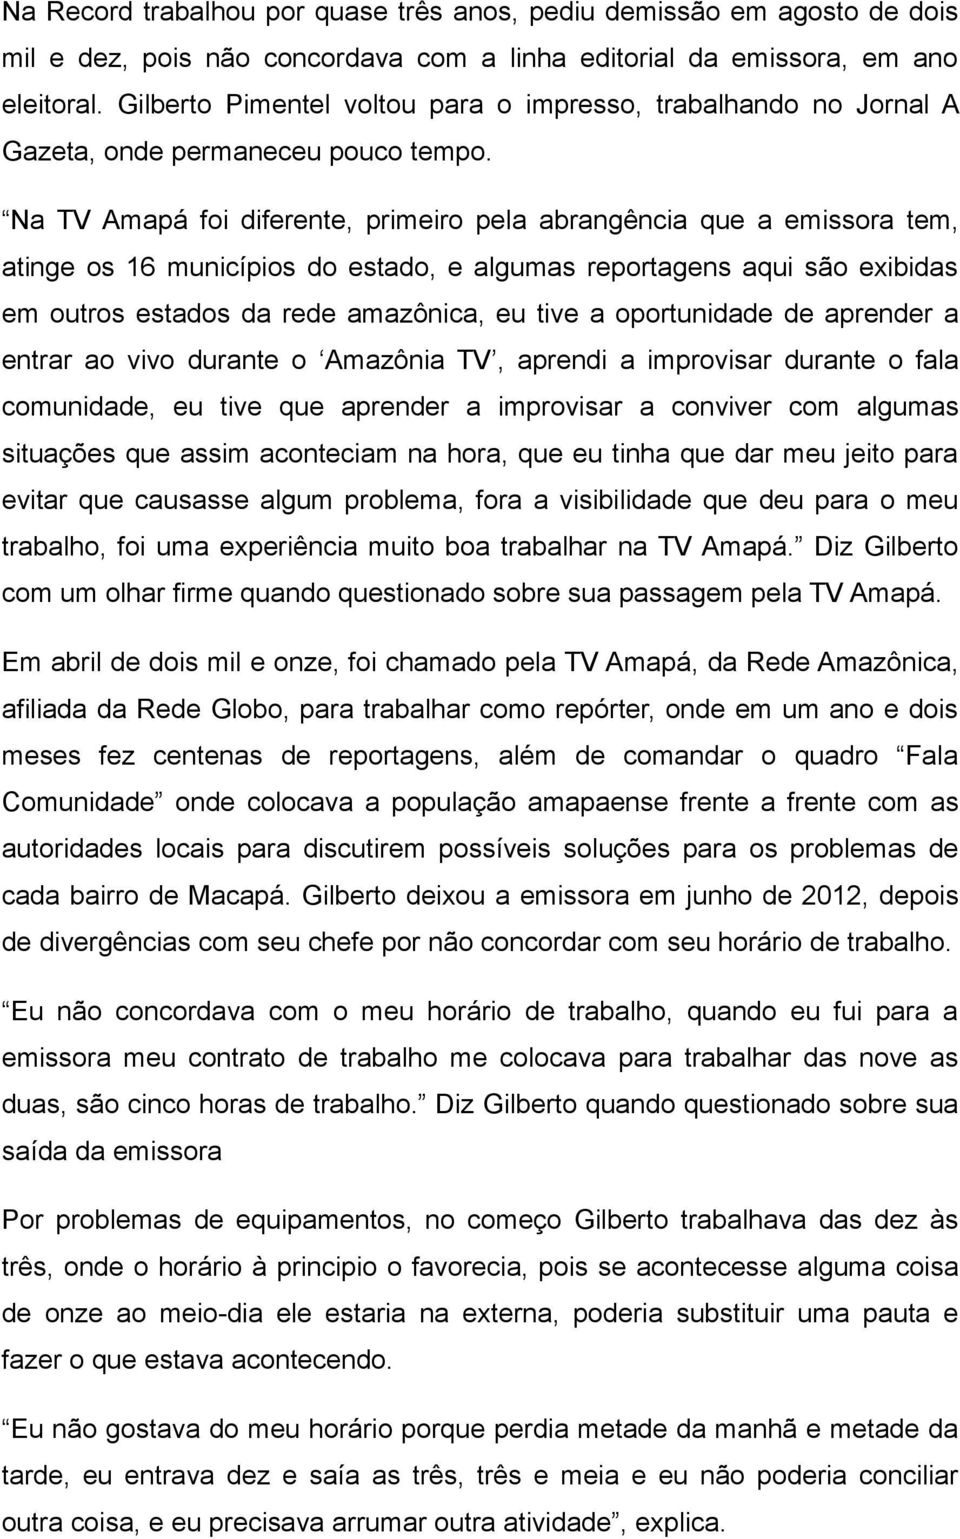 Na TV Amapá foi diferente, primeiro pela abrangência que a emissora tem, atinge os 16 municípios do estado, e algumas reportagens aqui são exibidas em outros estados da rede amazônica, eu tive a